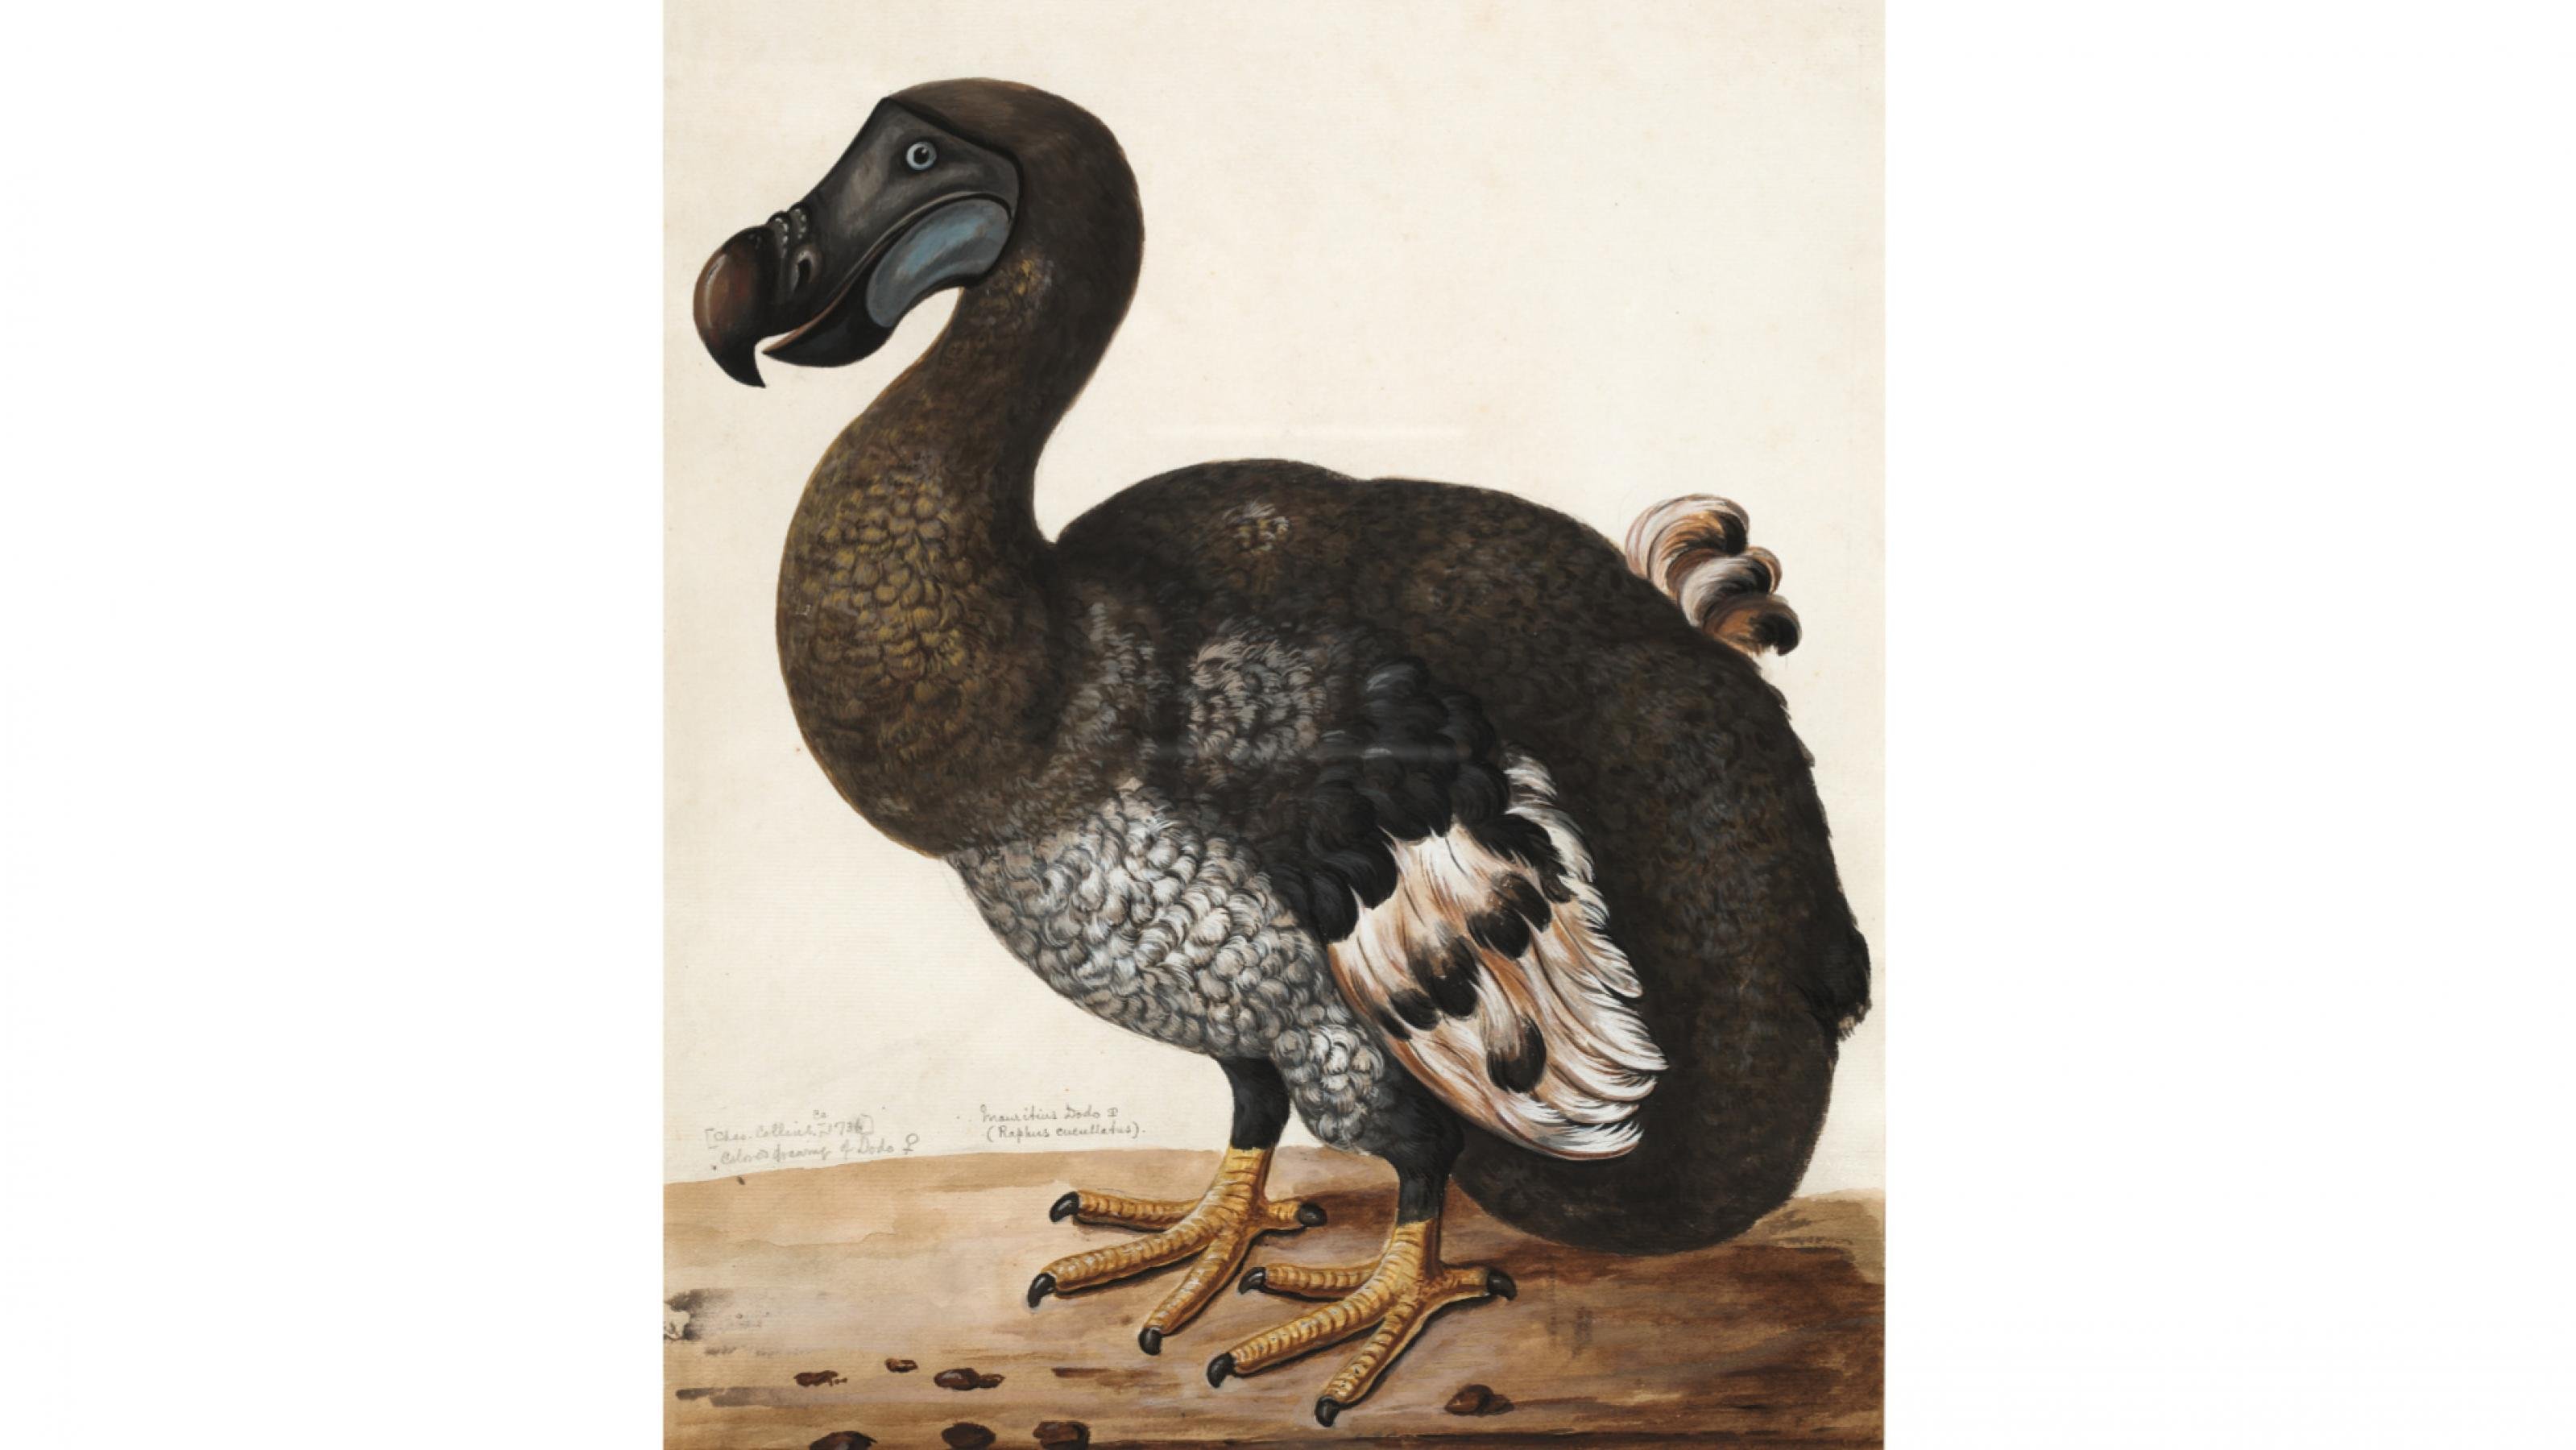 Zeichnung eines Dodos mit einem großen Schnabel, kleinen Flügeln und kräftigen gelben Krallen.